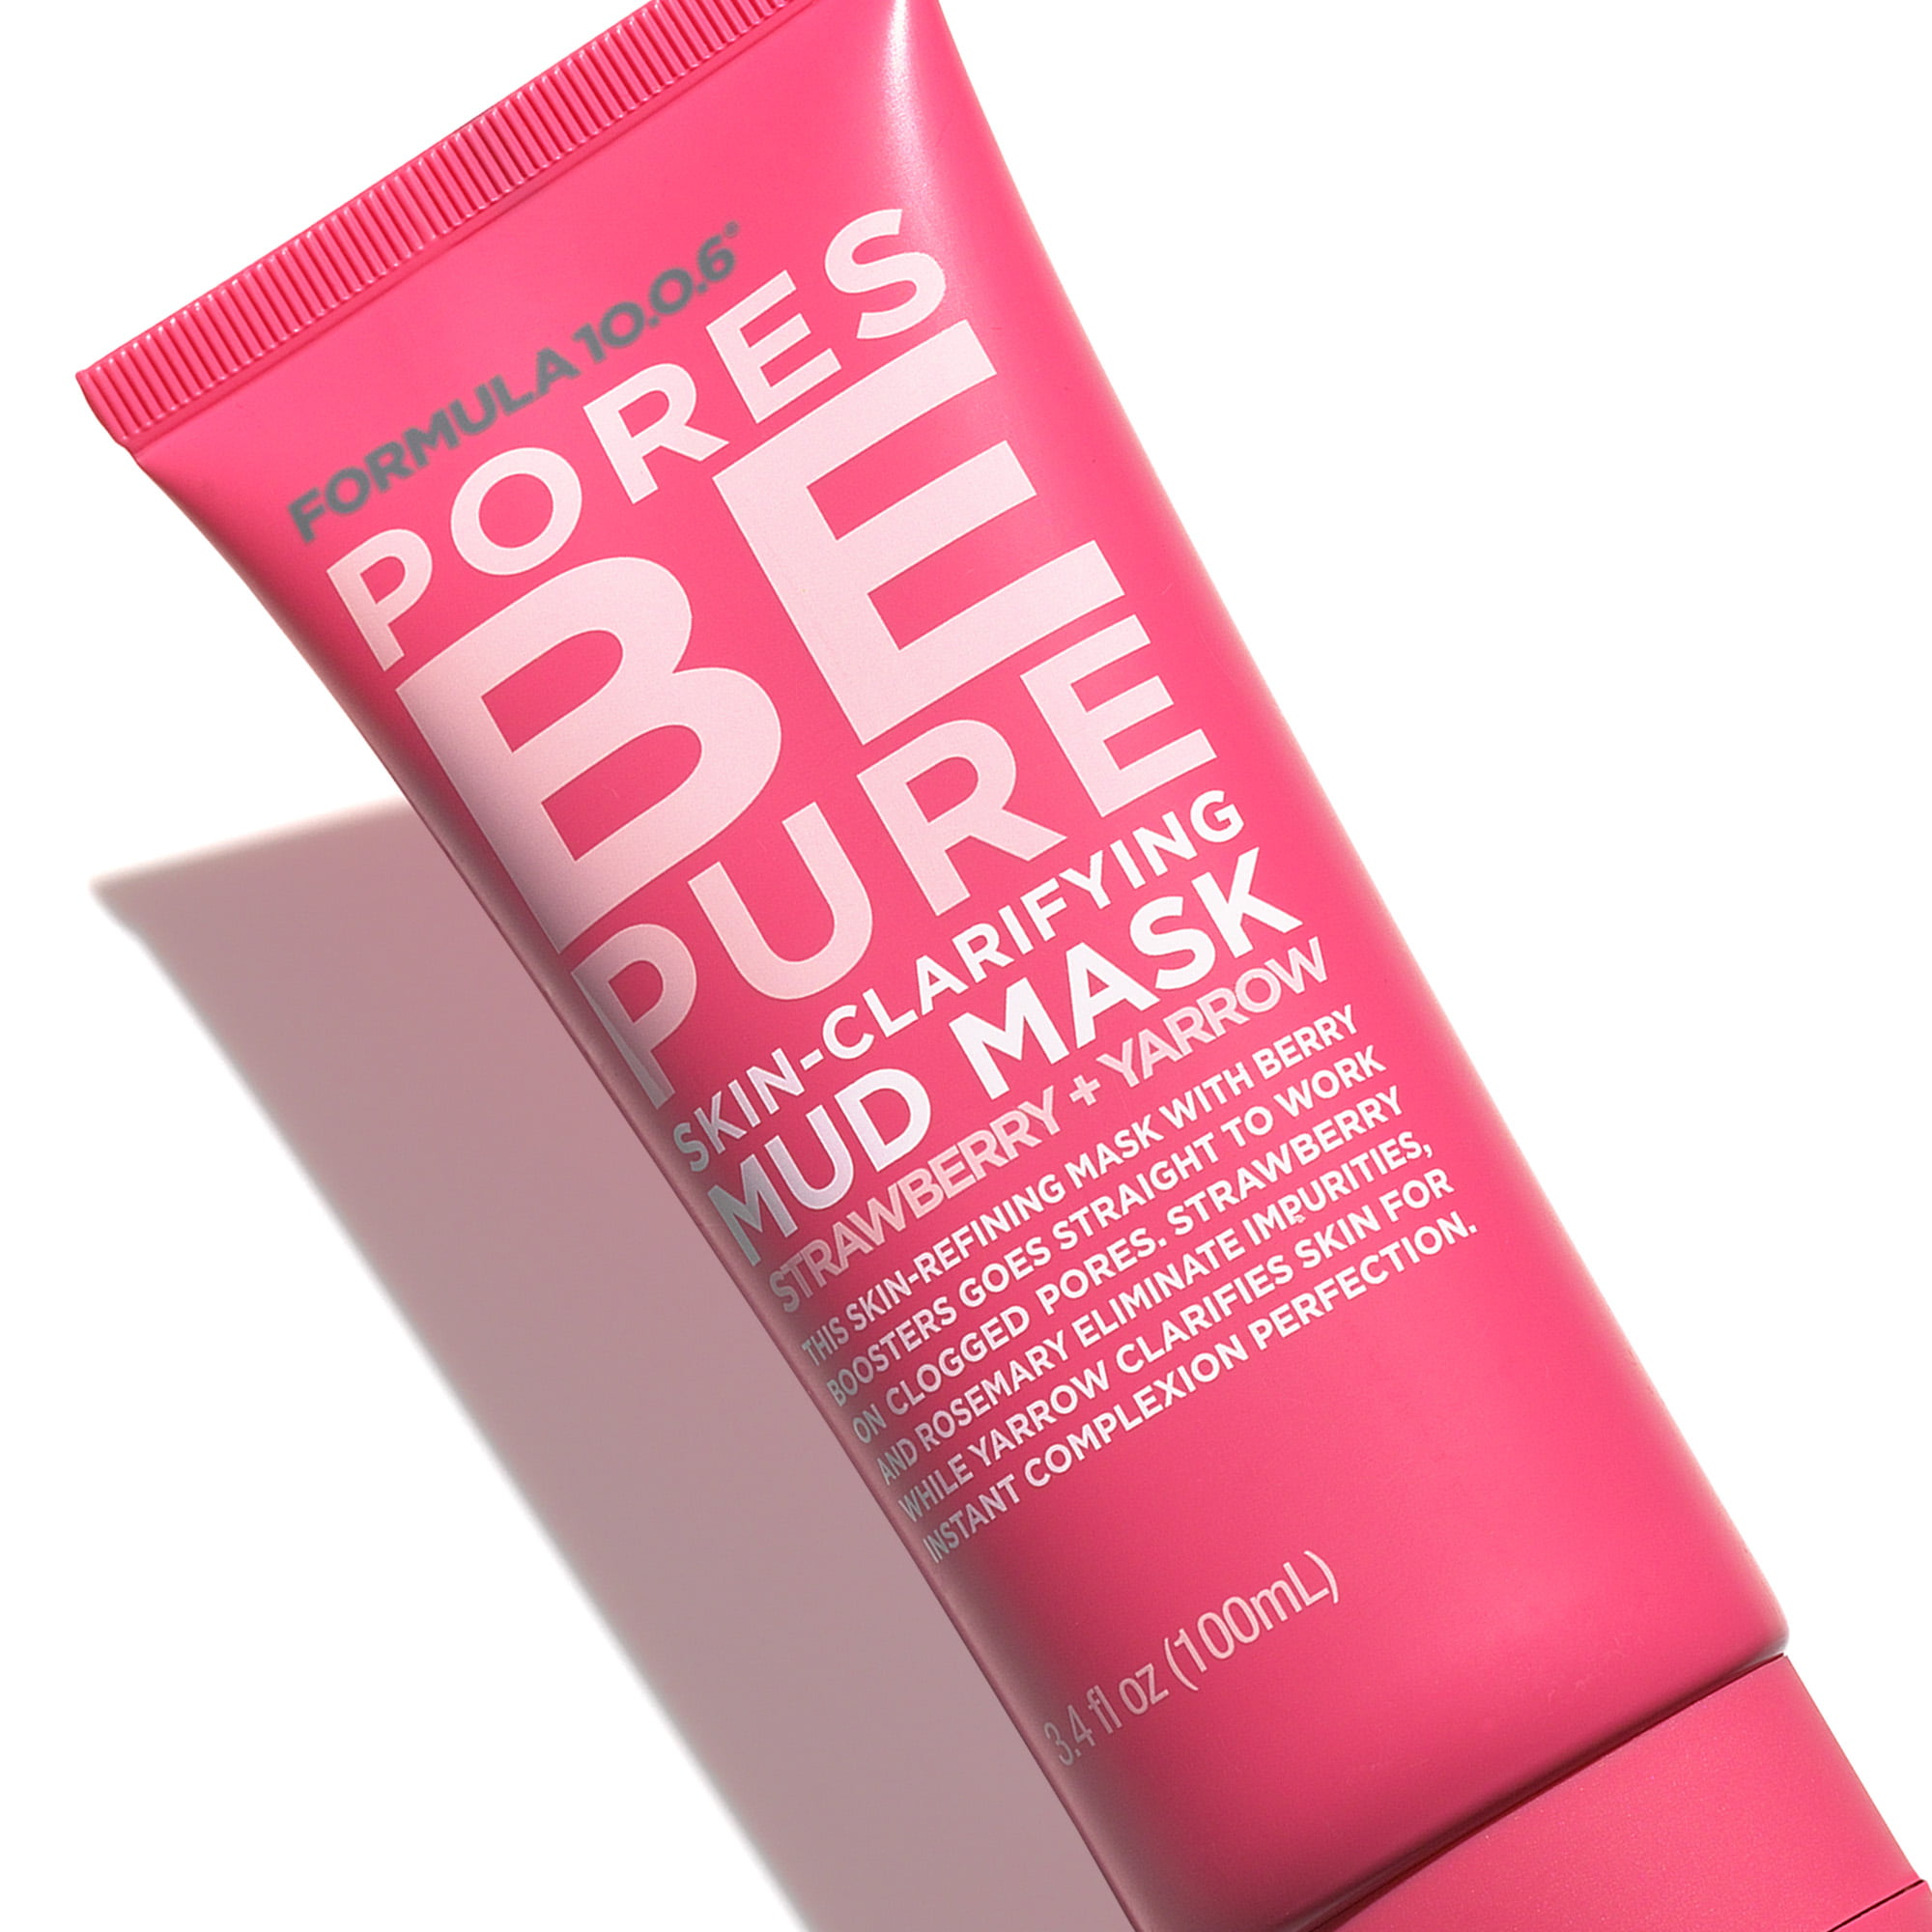 10.0.6 - Pores be Pure Skin-Clarifying Mud Mask, 3.4 - Walmart.com